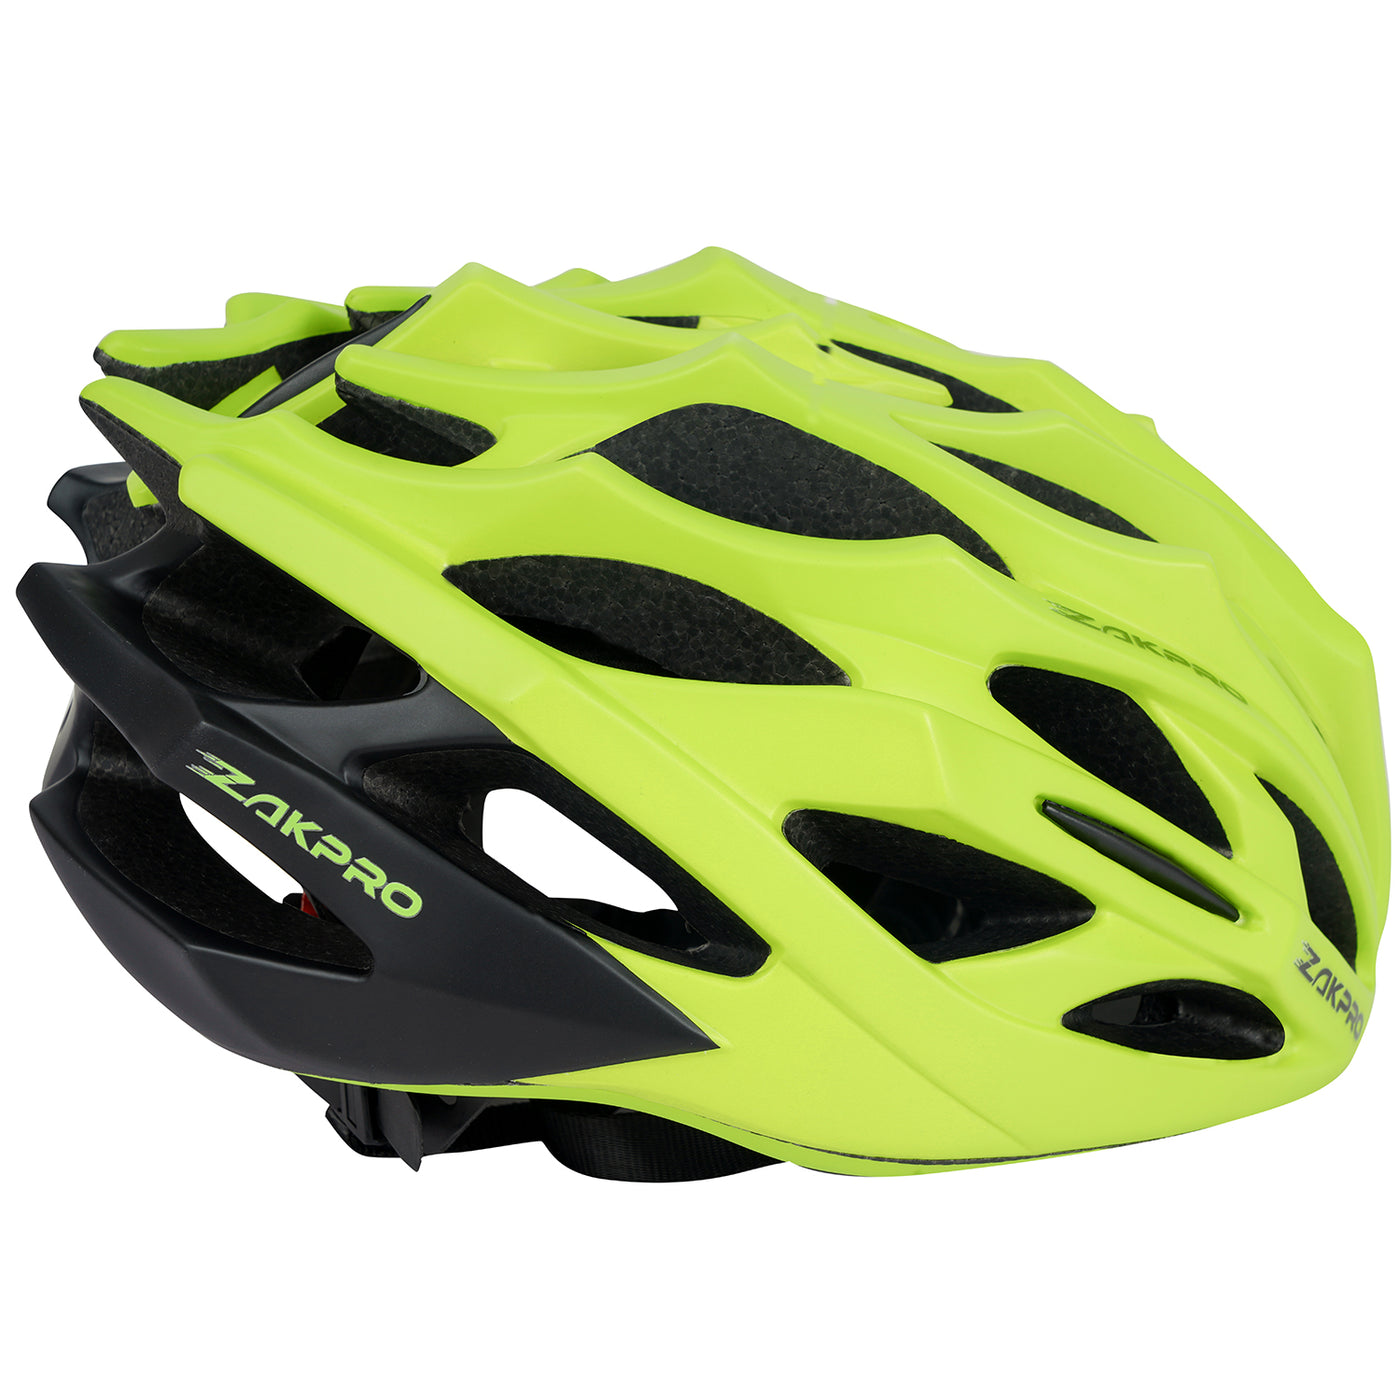 Zakpro Signature Road Cycling Helmet (Florescent Green)